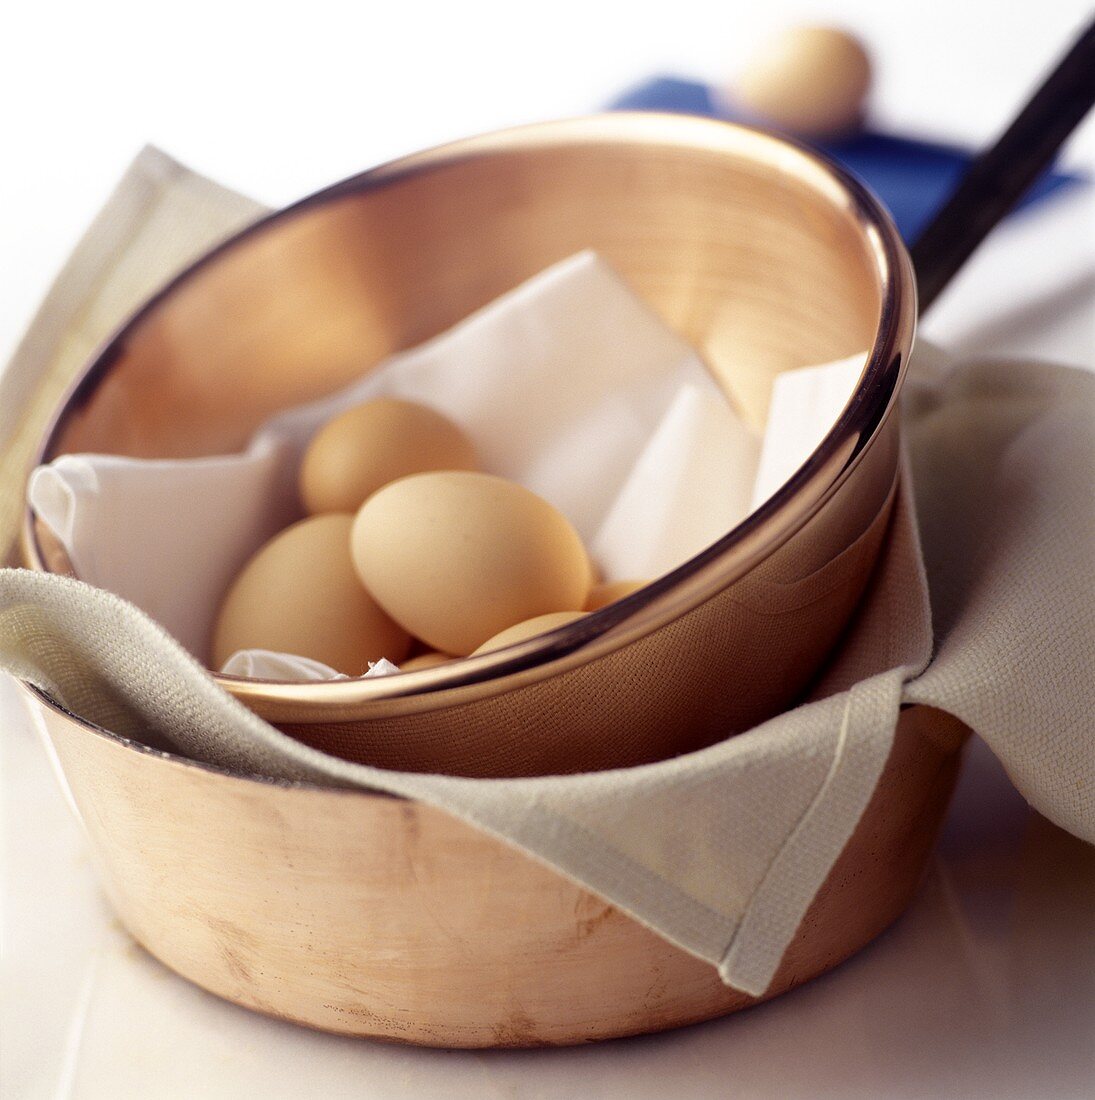 Eggs in Copper Dish